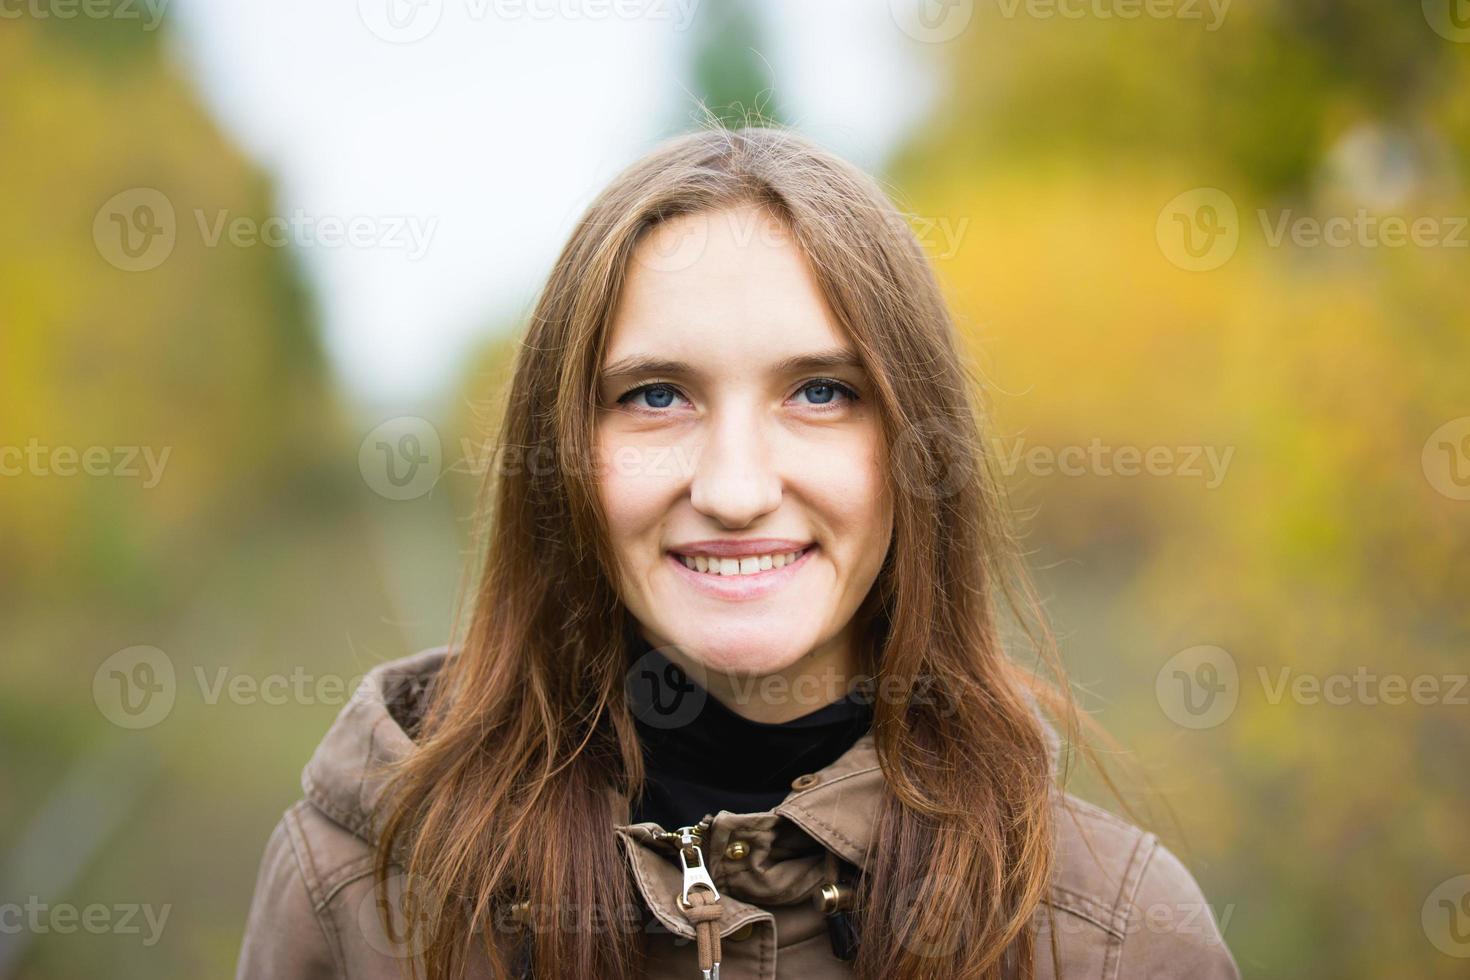 retrato de jovem bonita no parque outono outono. linda garota caucasiana andando na floresta, close-up foto